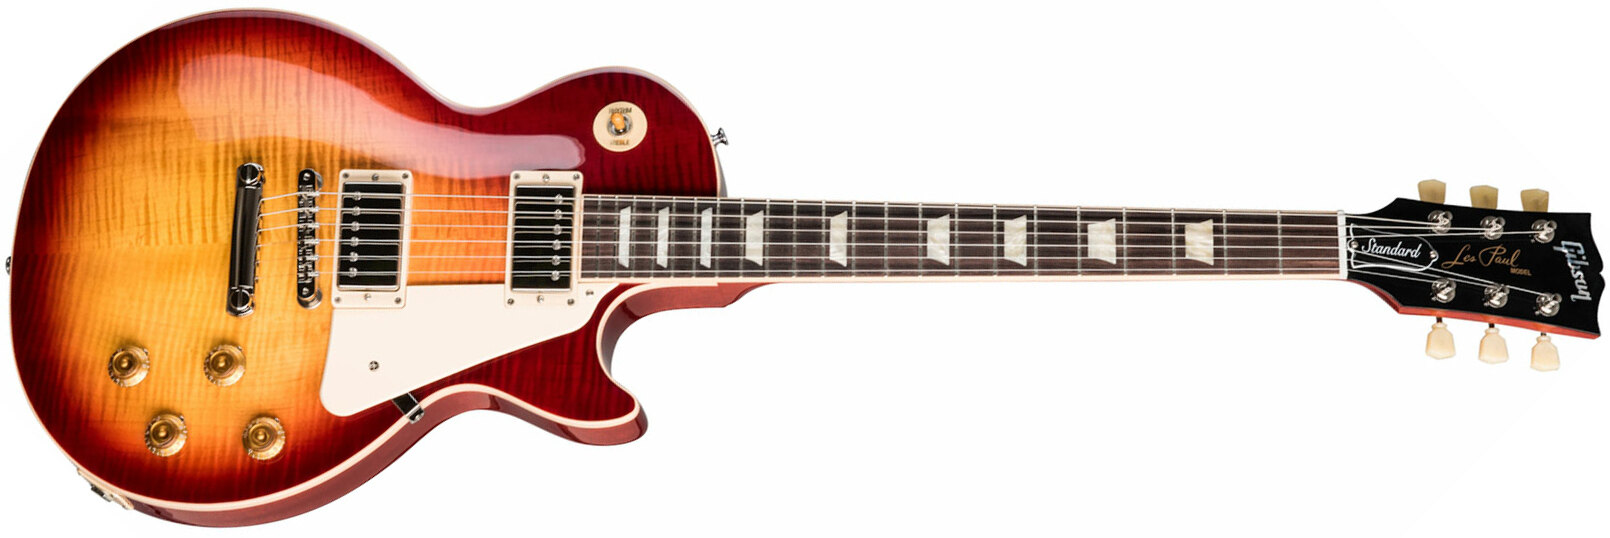 Gibson Les Paul Standard 50s 2h Ht Rw - Heritage Cherry Sunburst - Guitarra eléctrica de corte único. - Main picture